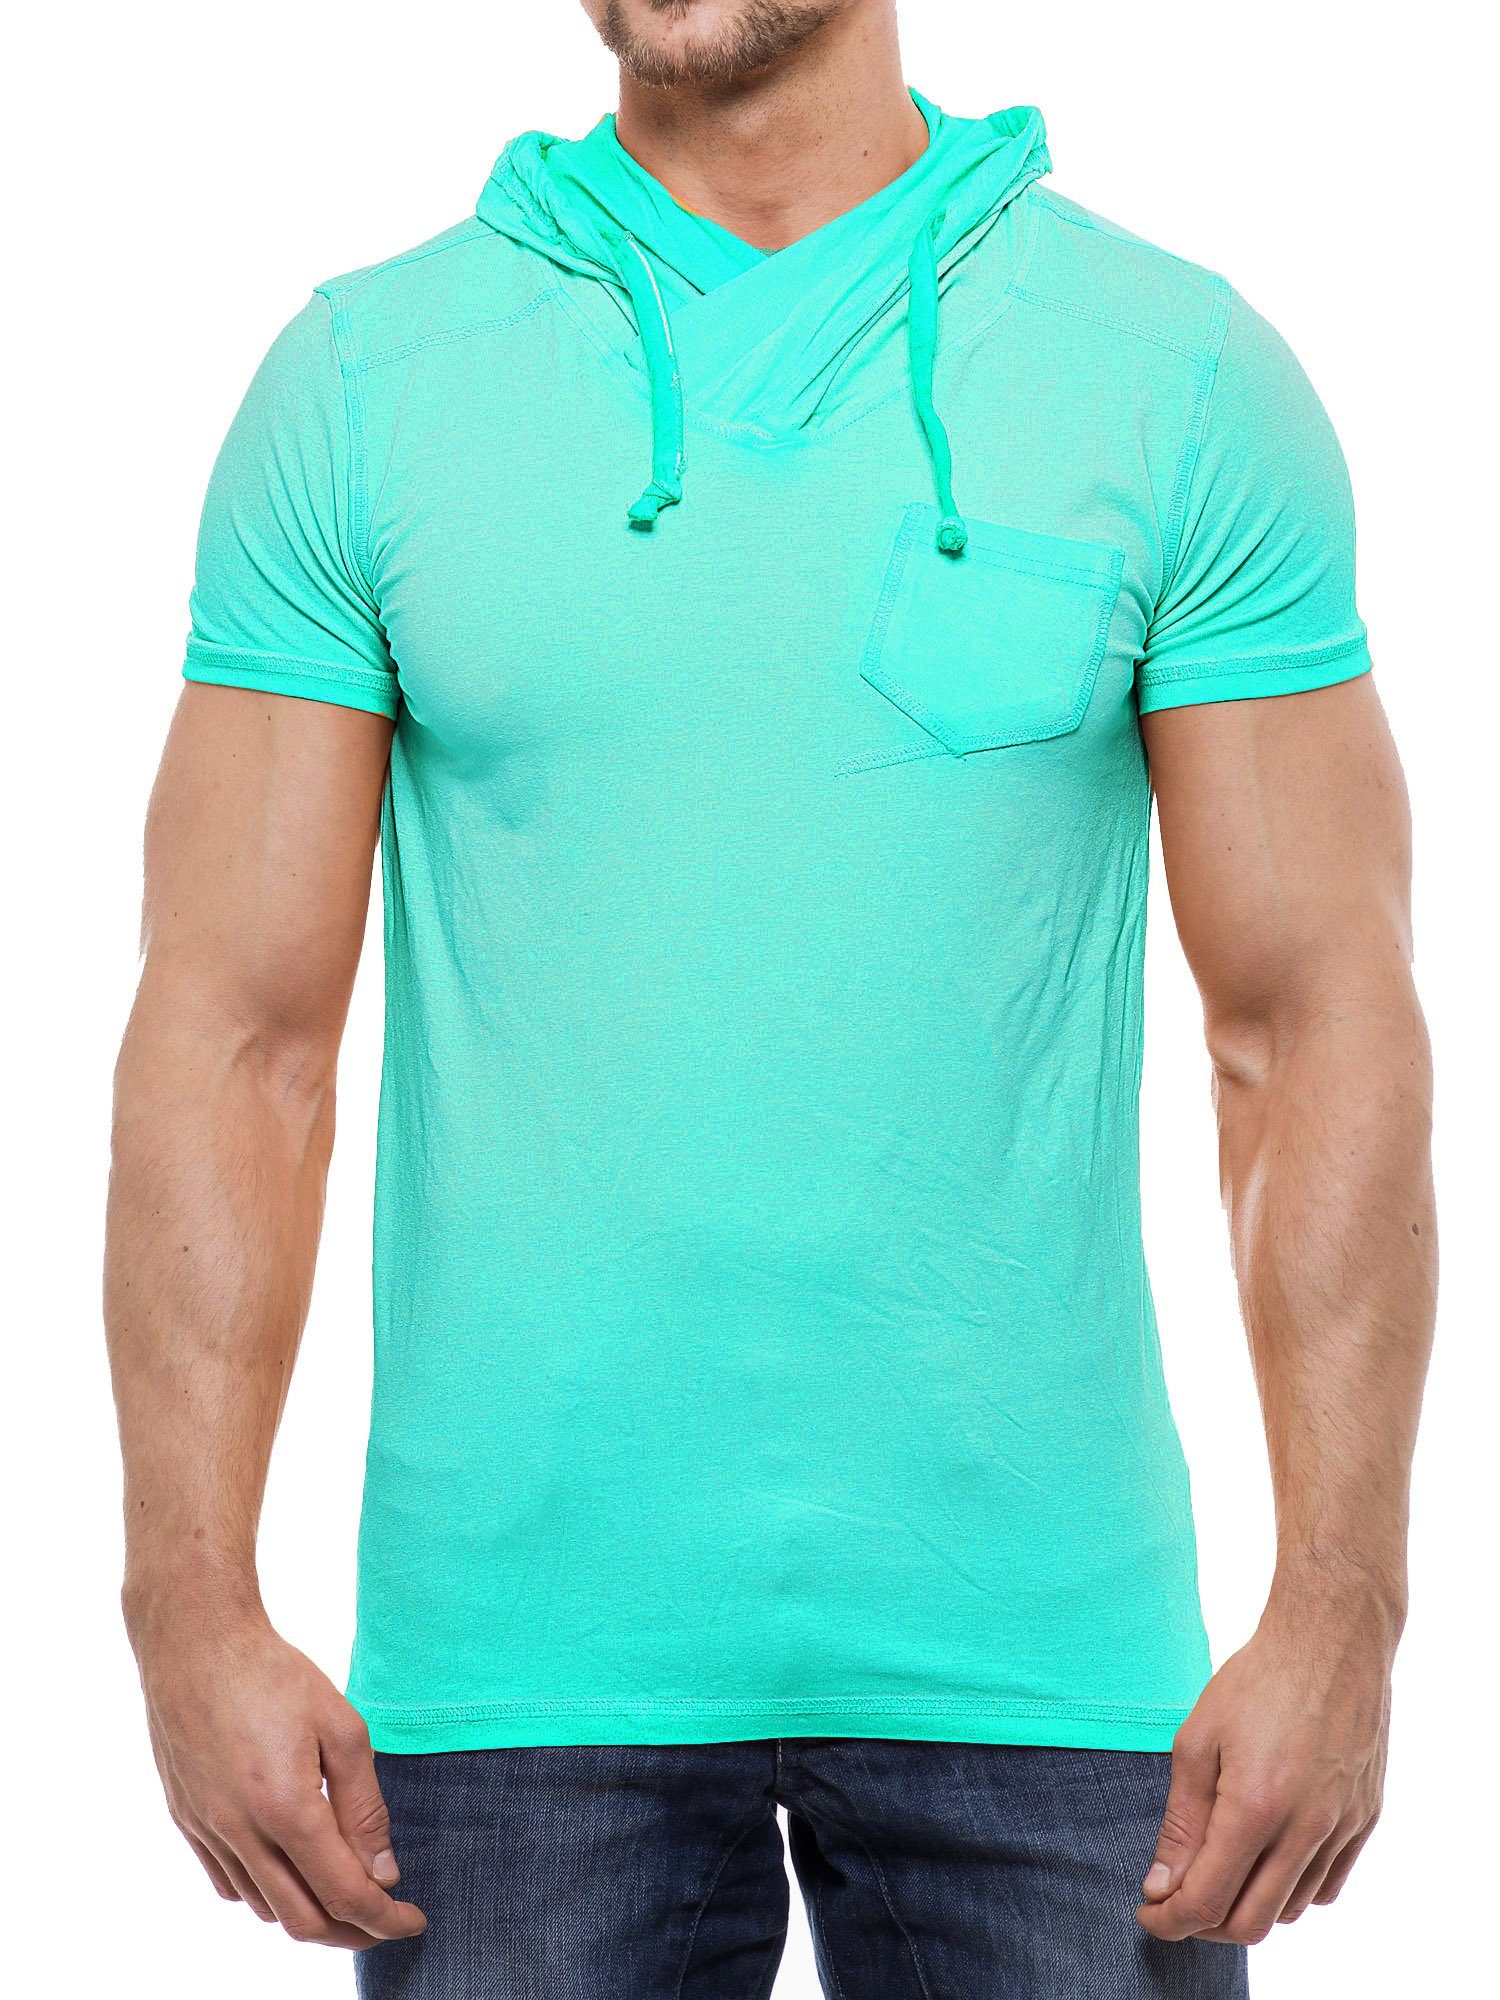 RMK T-Shirt T-Shirts Modelle mit Schal-Kragen, Streetwear Freizeit Mint